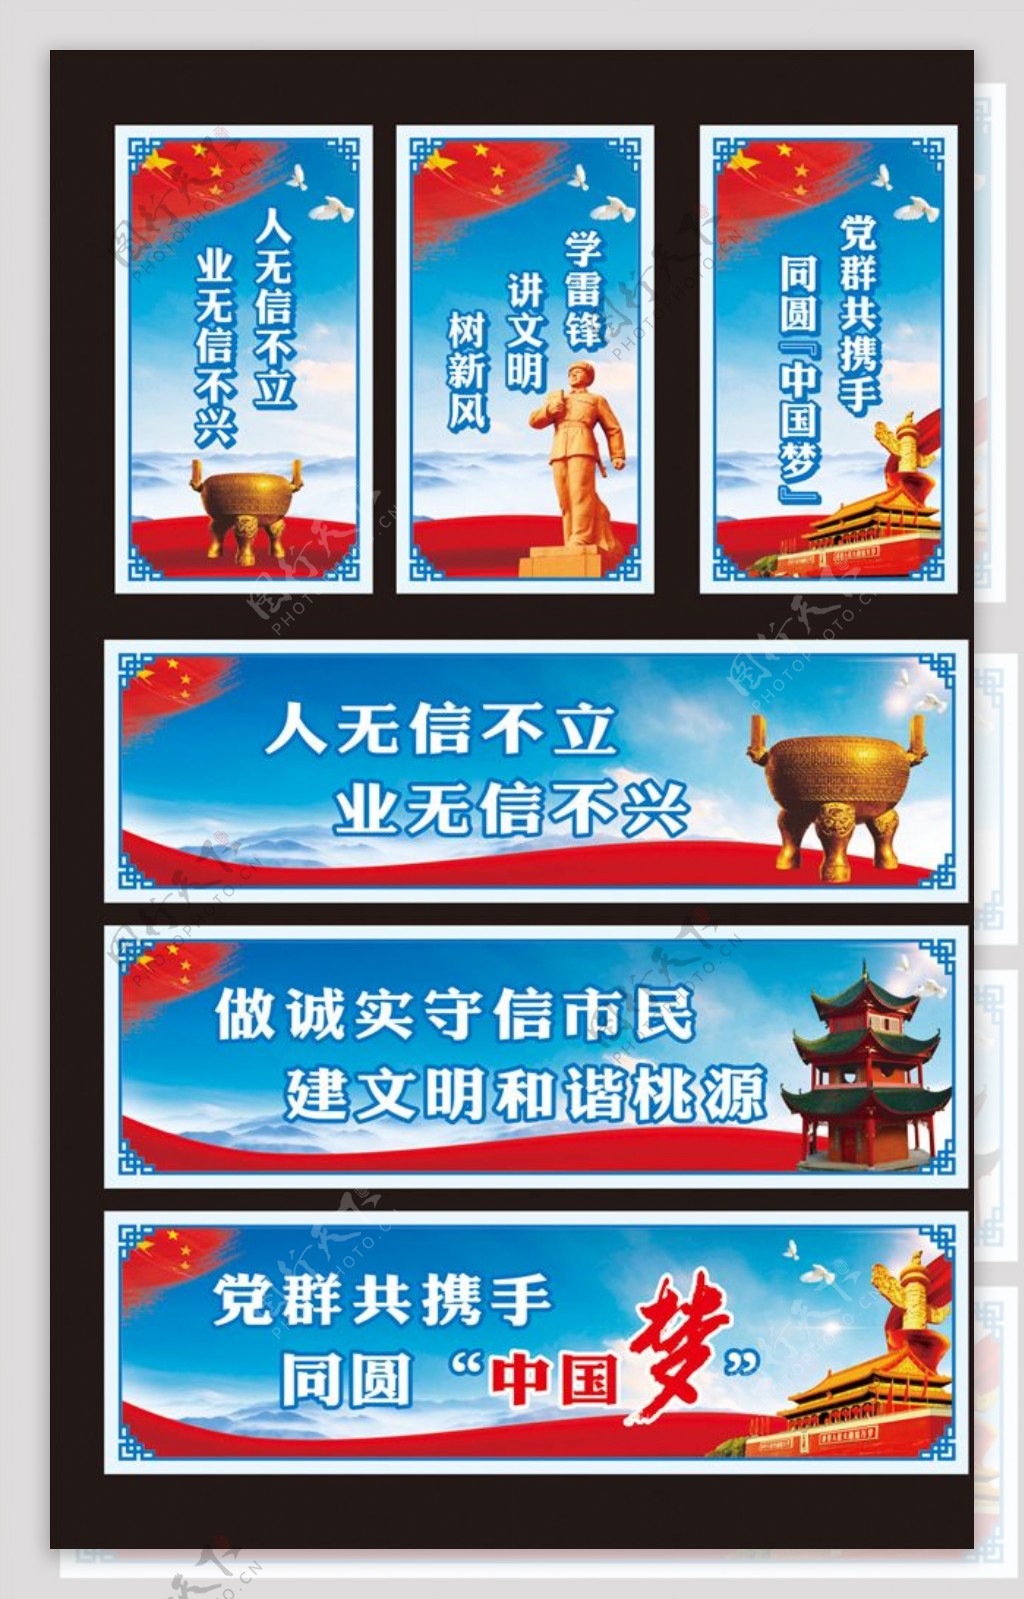 蓝色大气诚信中国梦宣传海报